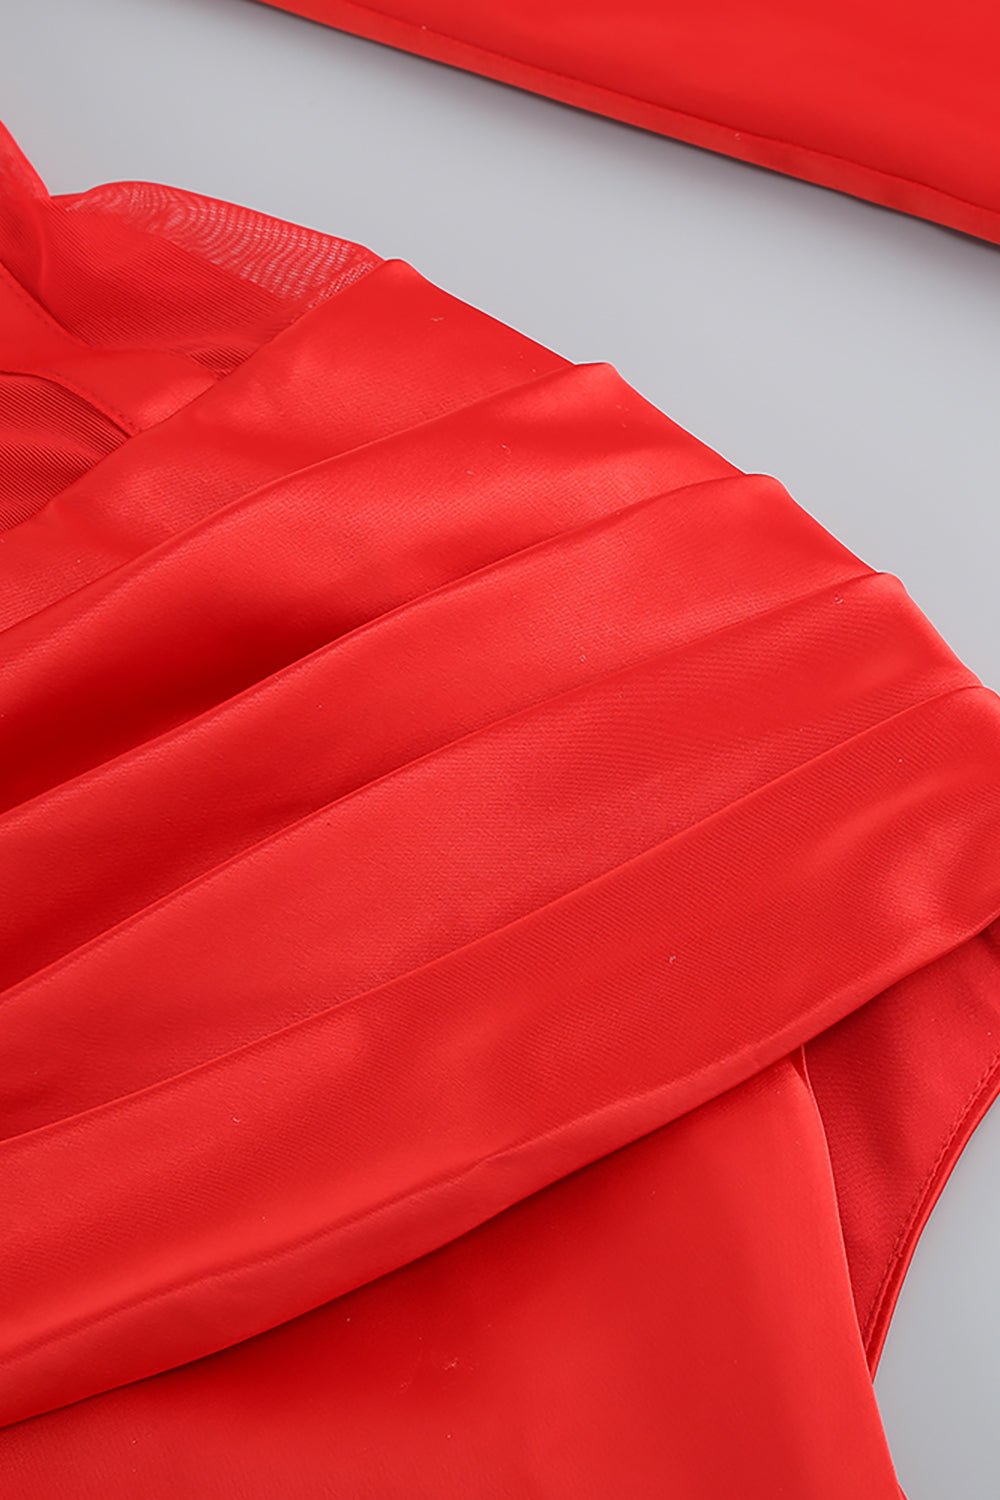 Robe longue fendue sur le côté en maille ajourée en V profond en rouge